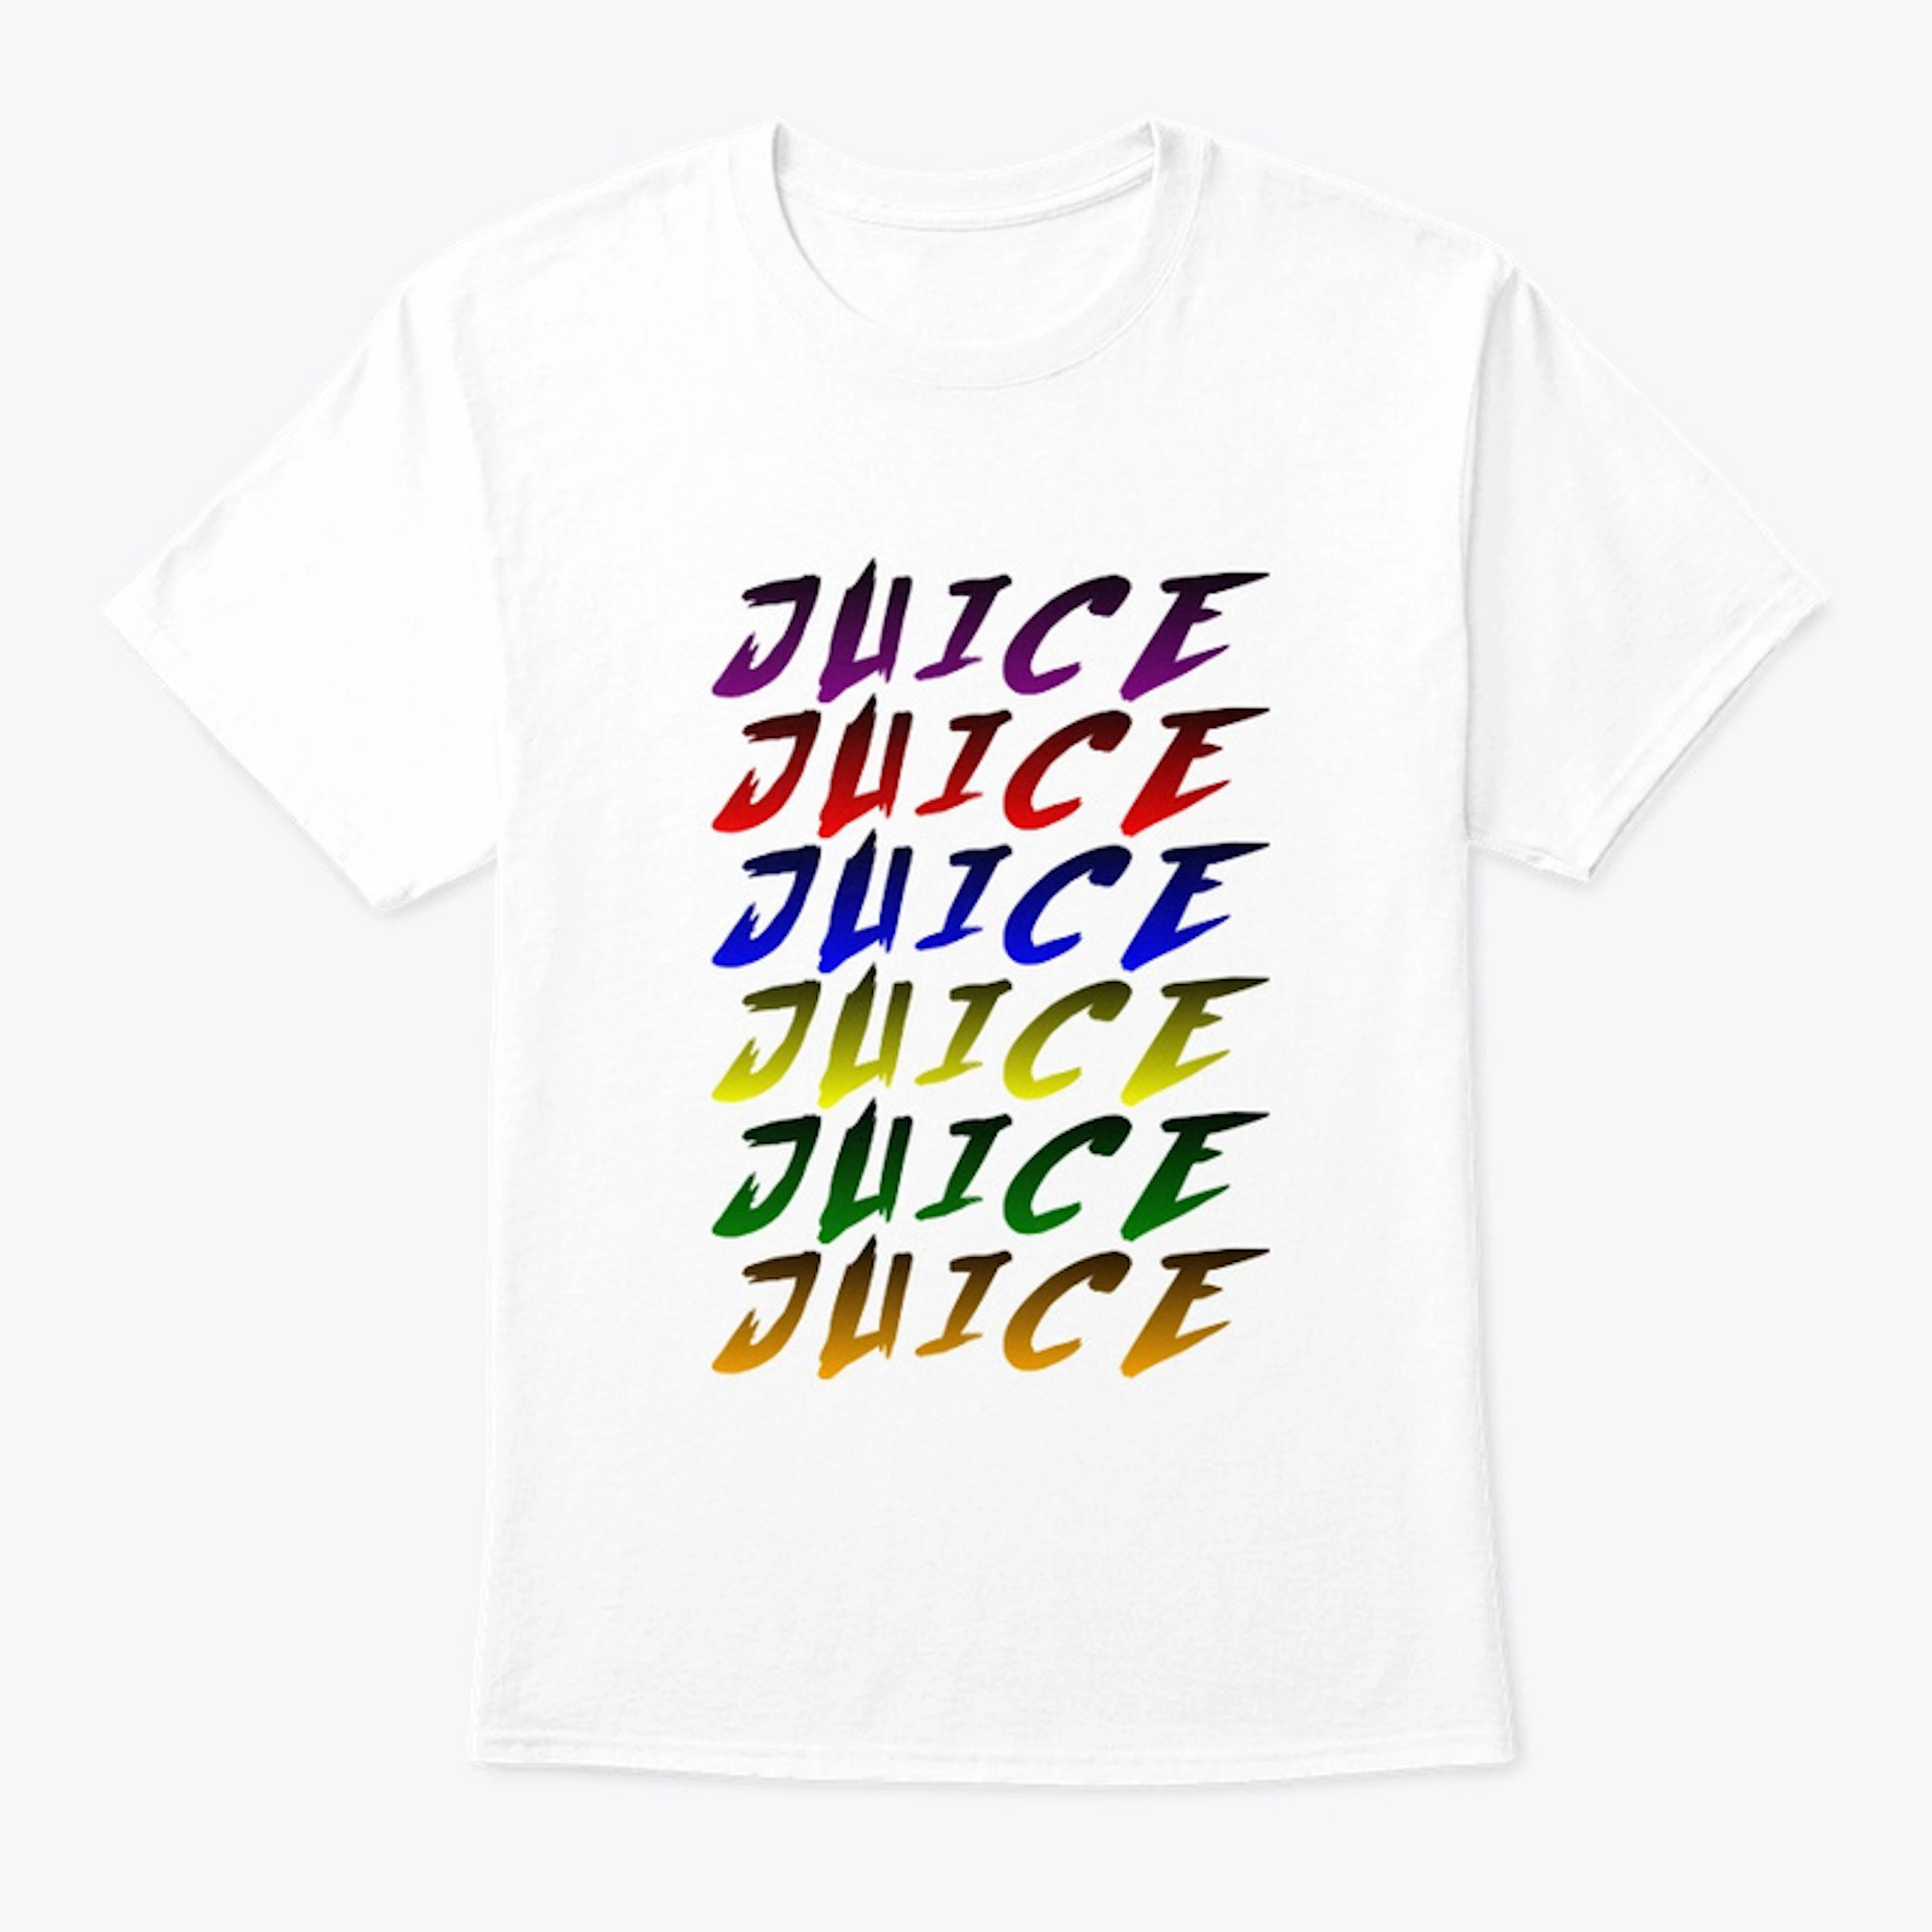 JUICE (Multicolored)